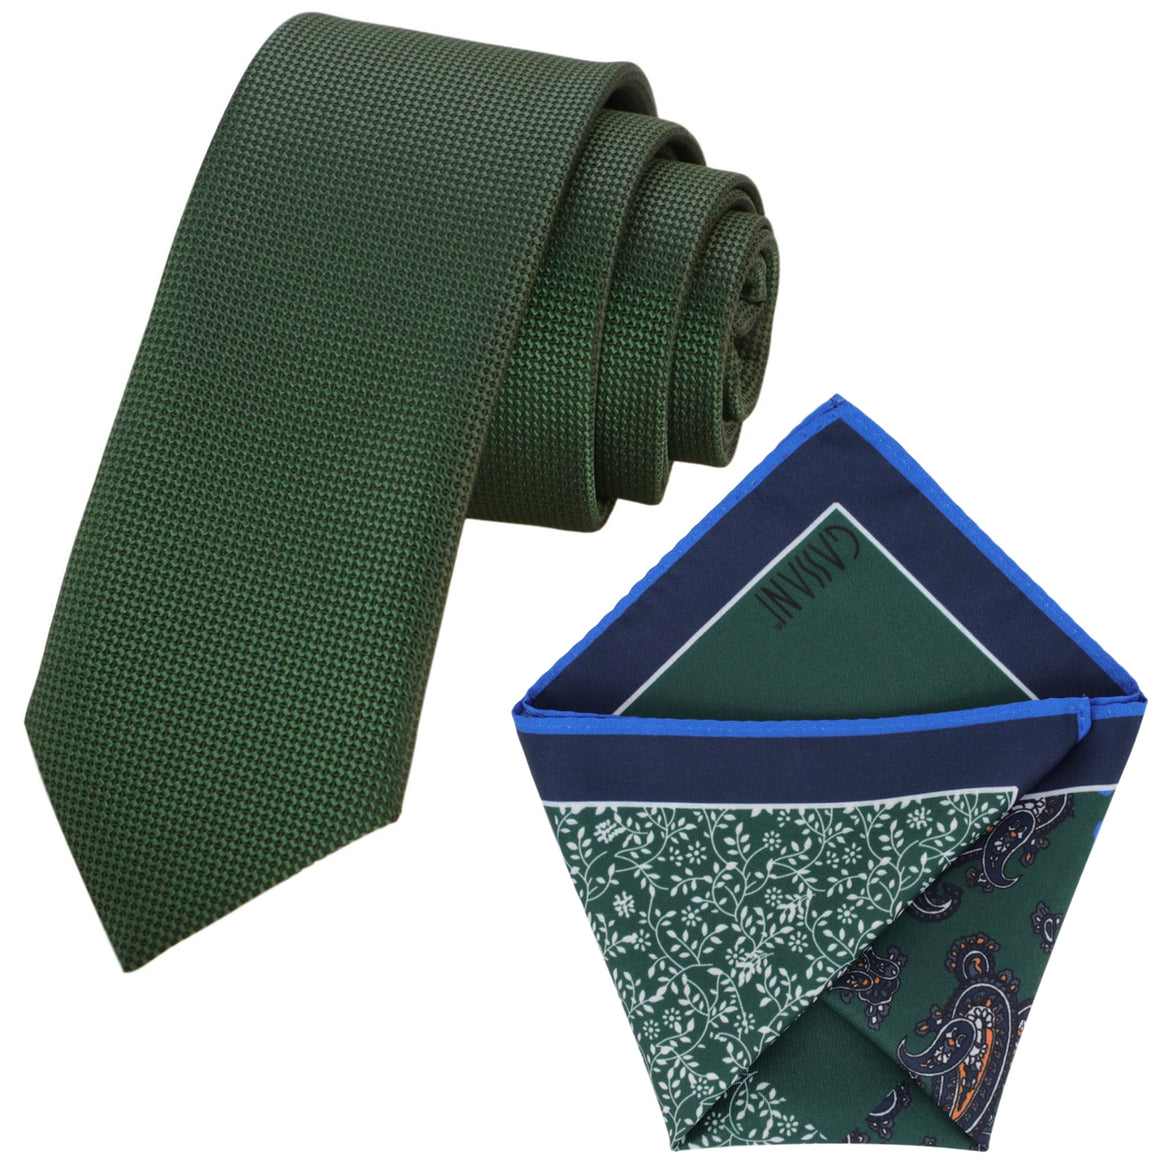 Set cravatta GASSANI, cravatta da uomo verde stretta larga 6 cm, fazzoletto colorato 4 disegni